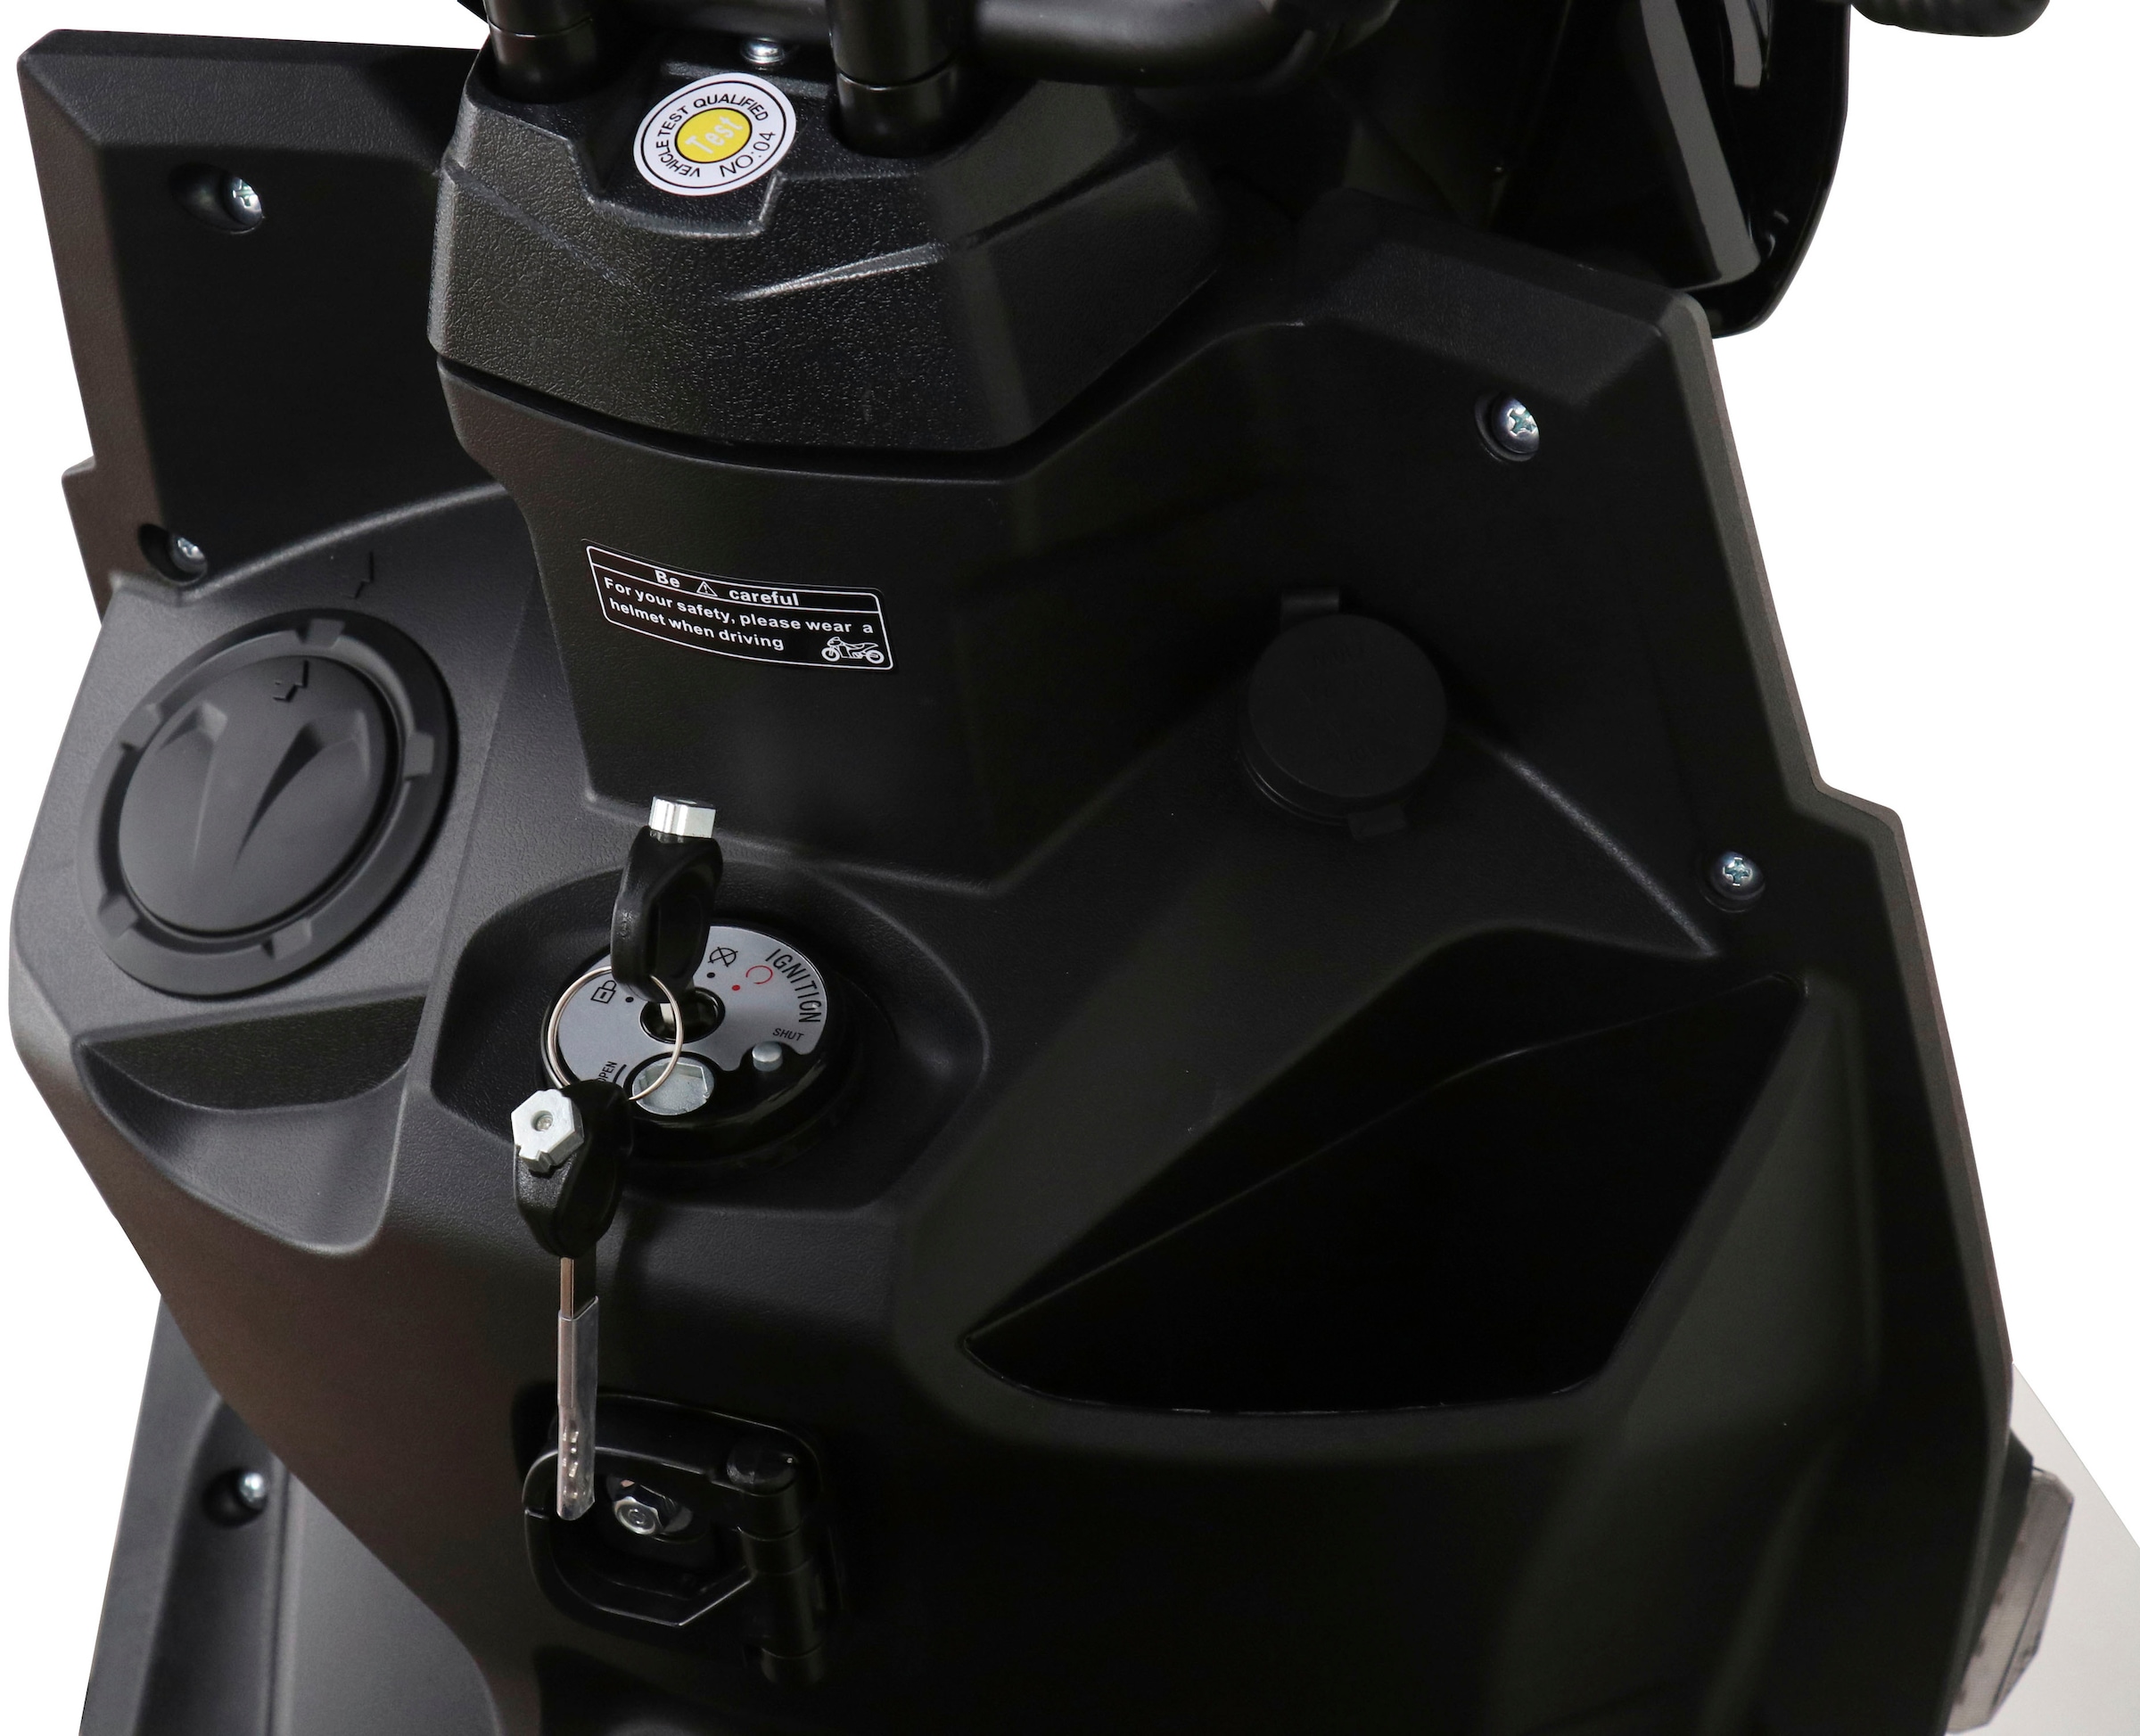 GT UNION Motorroller »PX 55 Cross-Concept 2.0 50-45«, 50 cm³, 45 km/h, Euro  5, 3 PS auf Rechnung online kaufen | BAUR